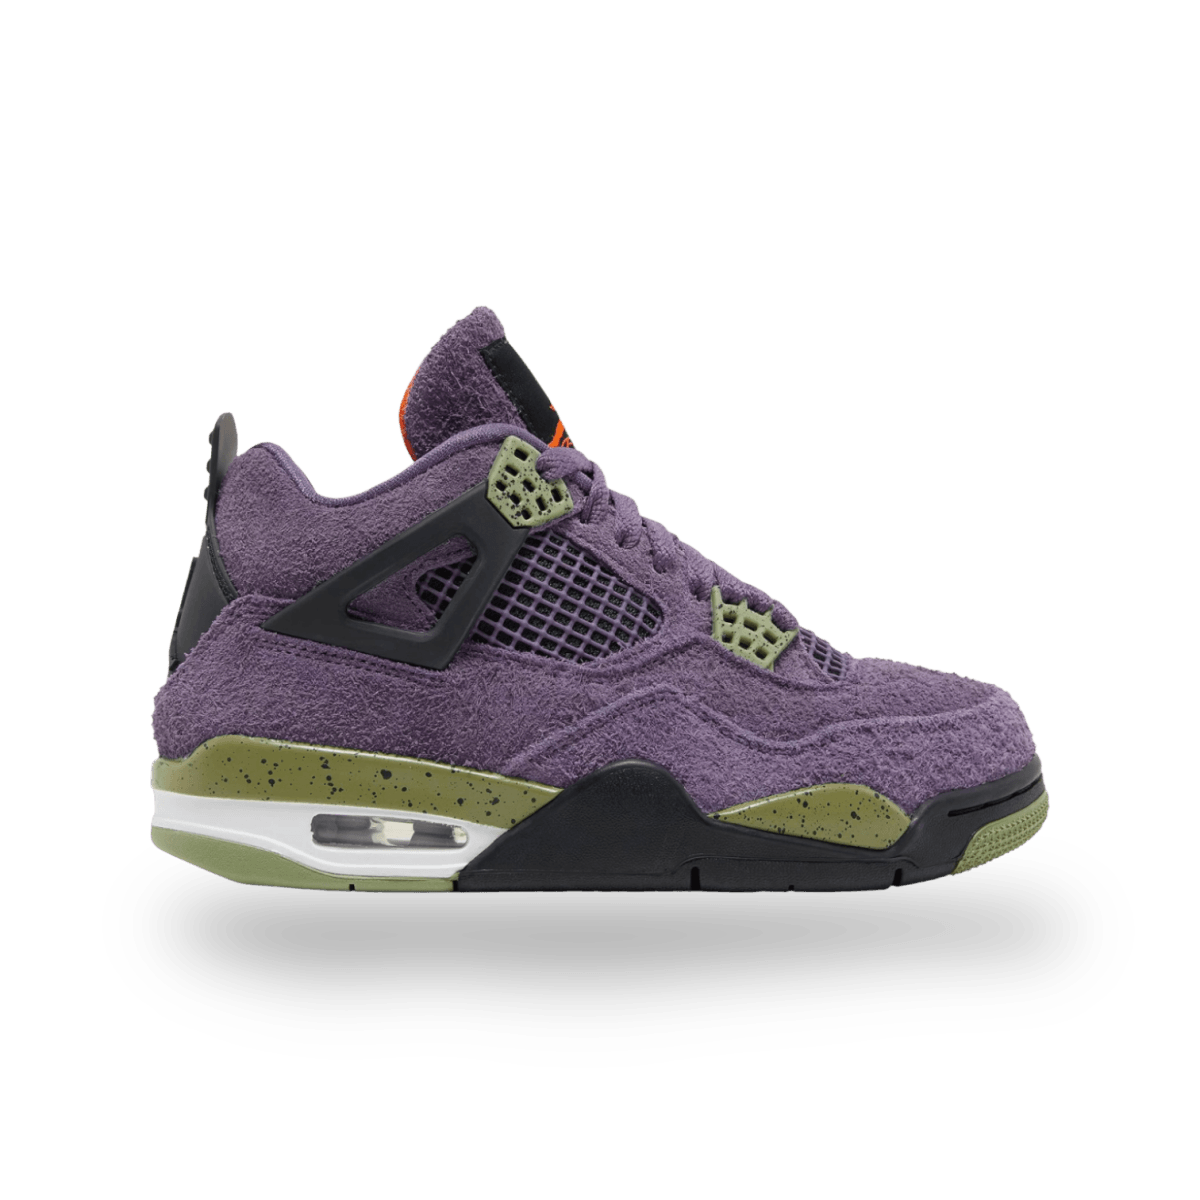 Air Jordan 4 Retro 'Canyon Purple' - Women - Mid Sneaker - Jawns on Fire Sneakers & Streetwear